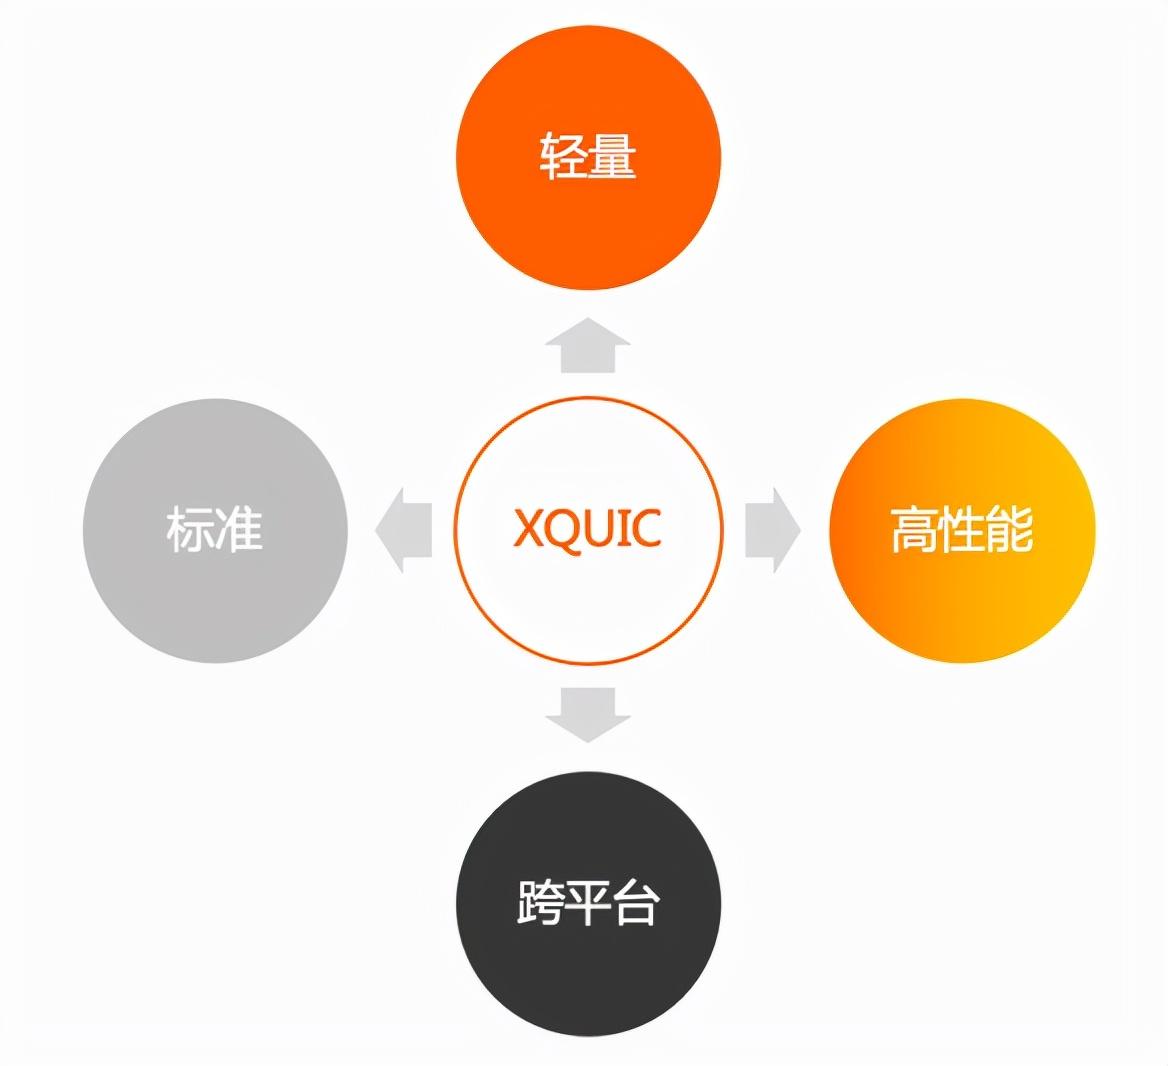 阿里自研标准化协议库 XQUIC 正式开源！